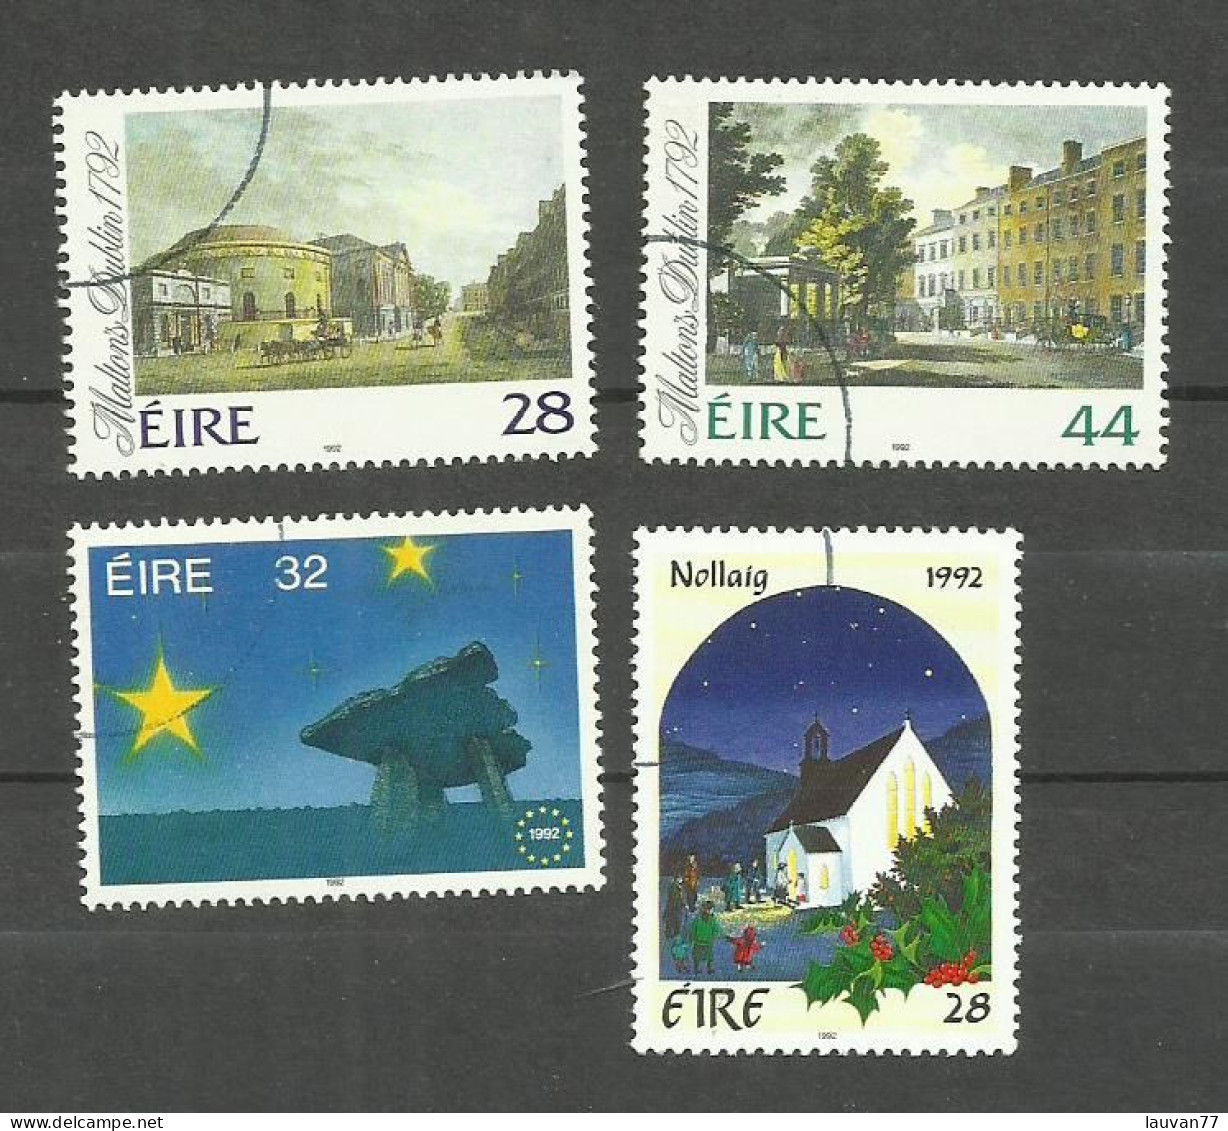 Irlande N°807, 808, 813, 817 Cote 4.75€ - Used Stamps